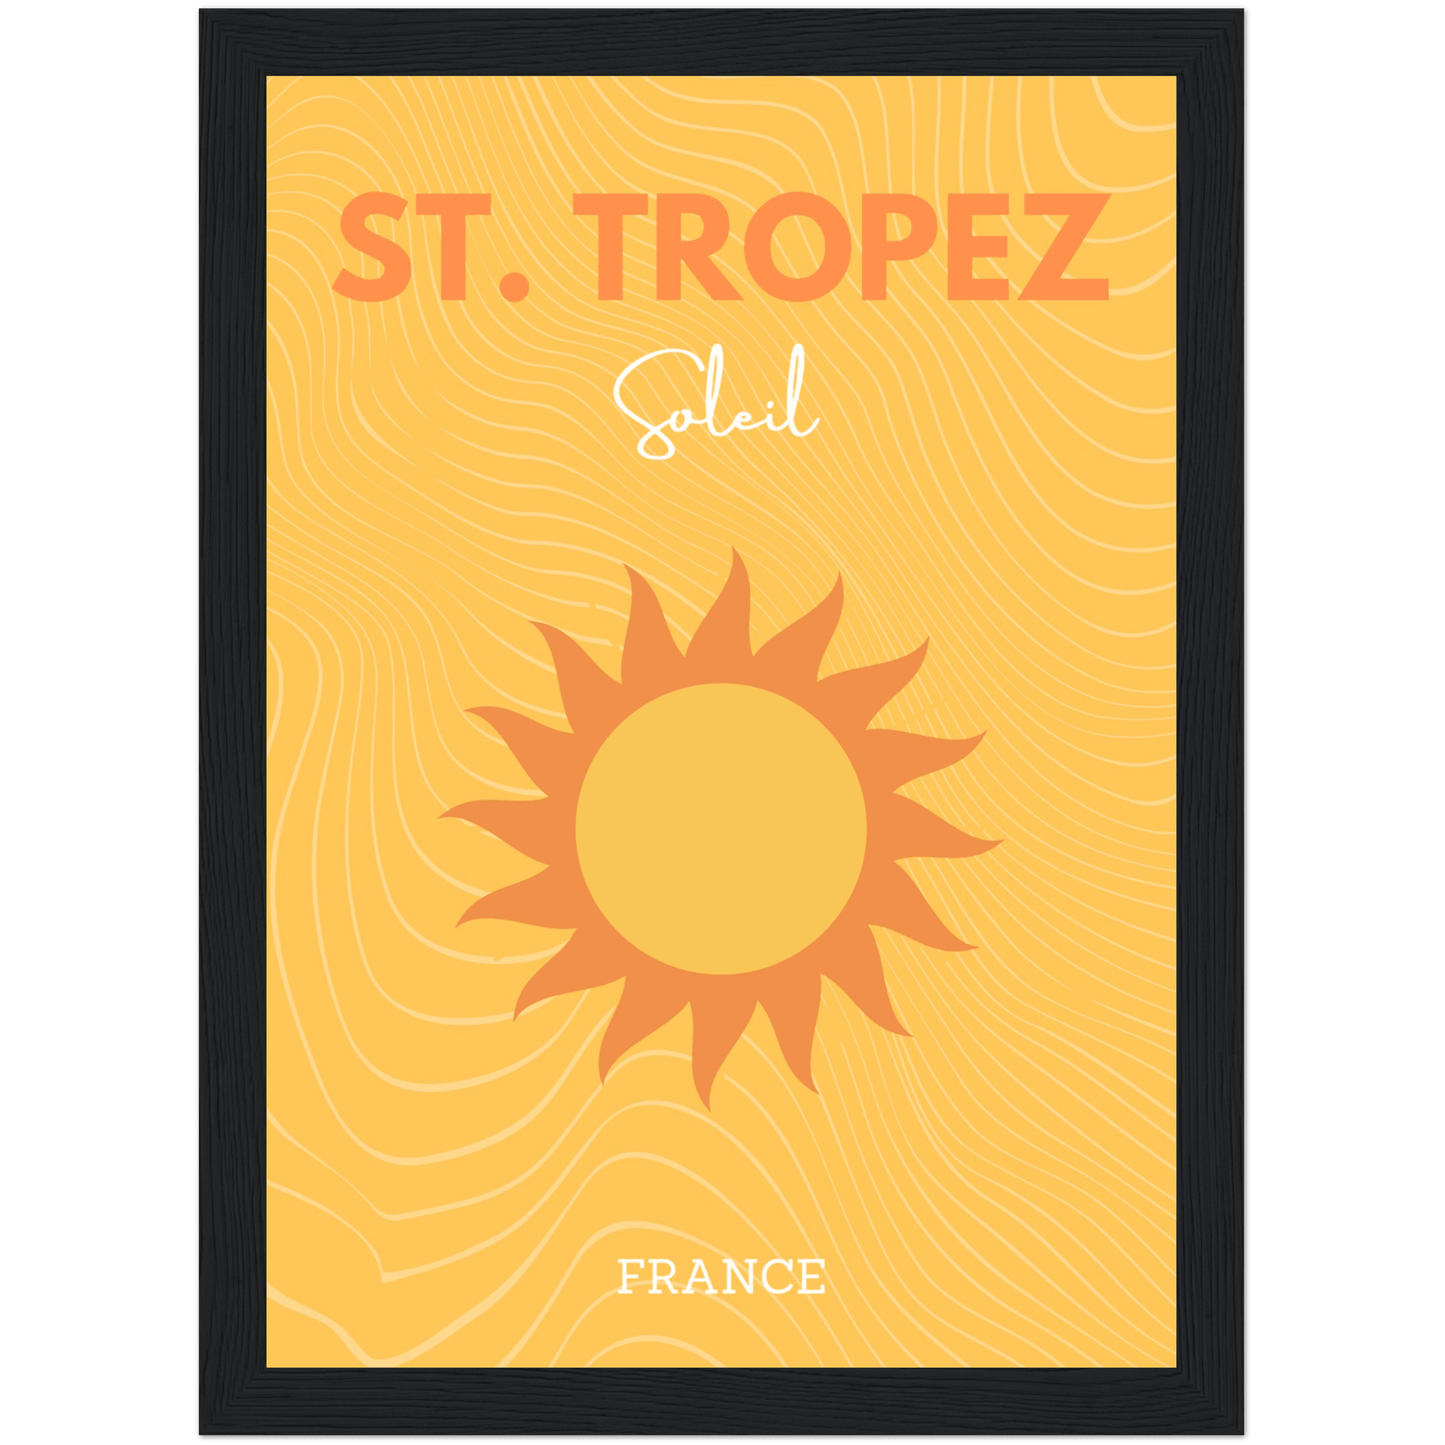 Saint-Tropez - A4, A3, A2 Posters Base - Poster Print Shop / Art Prints / PostersBase